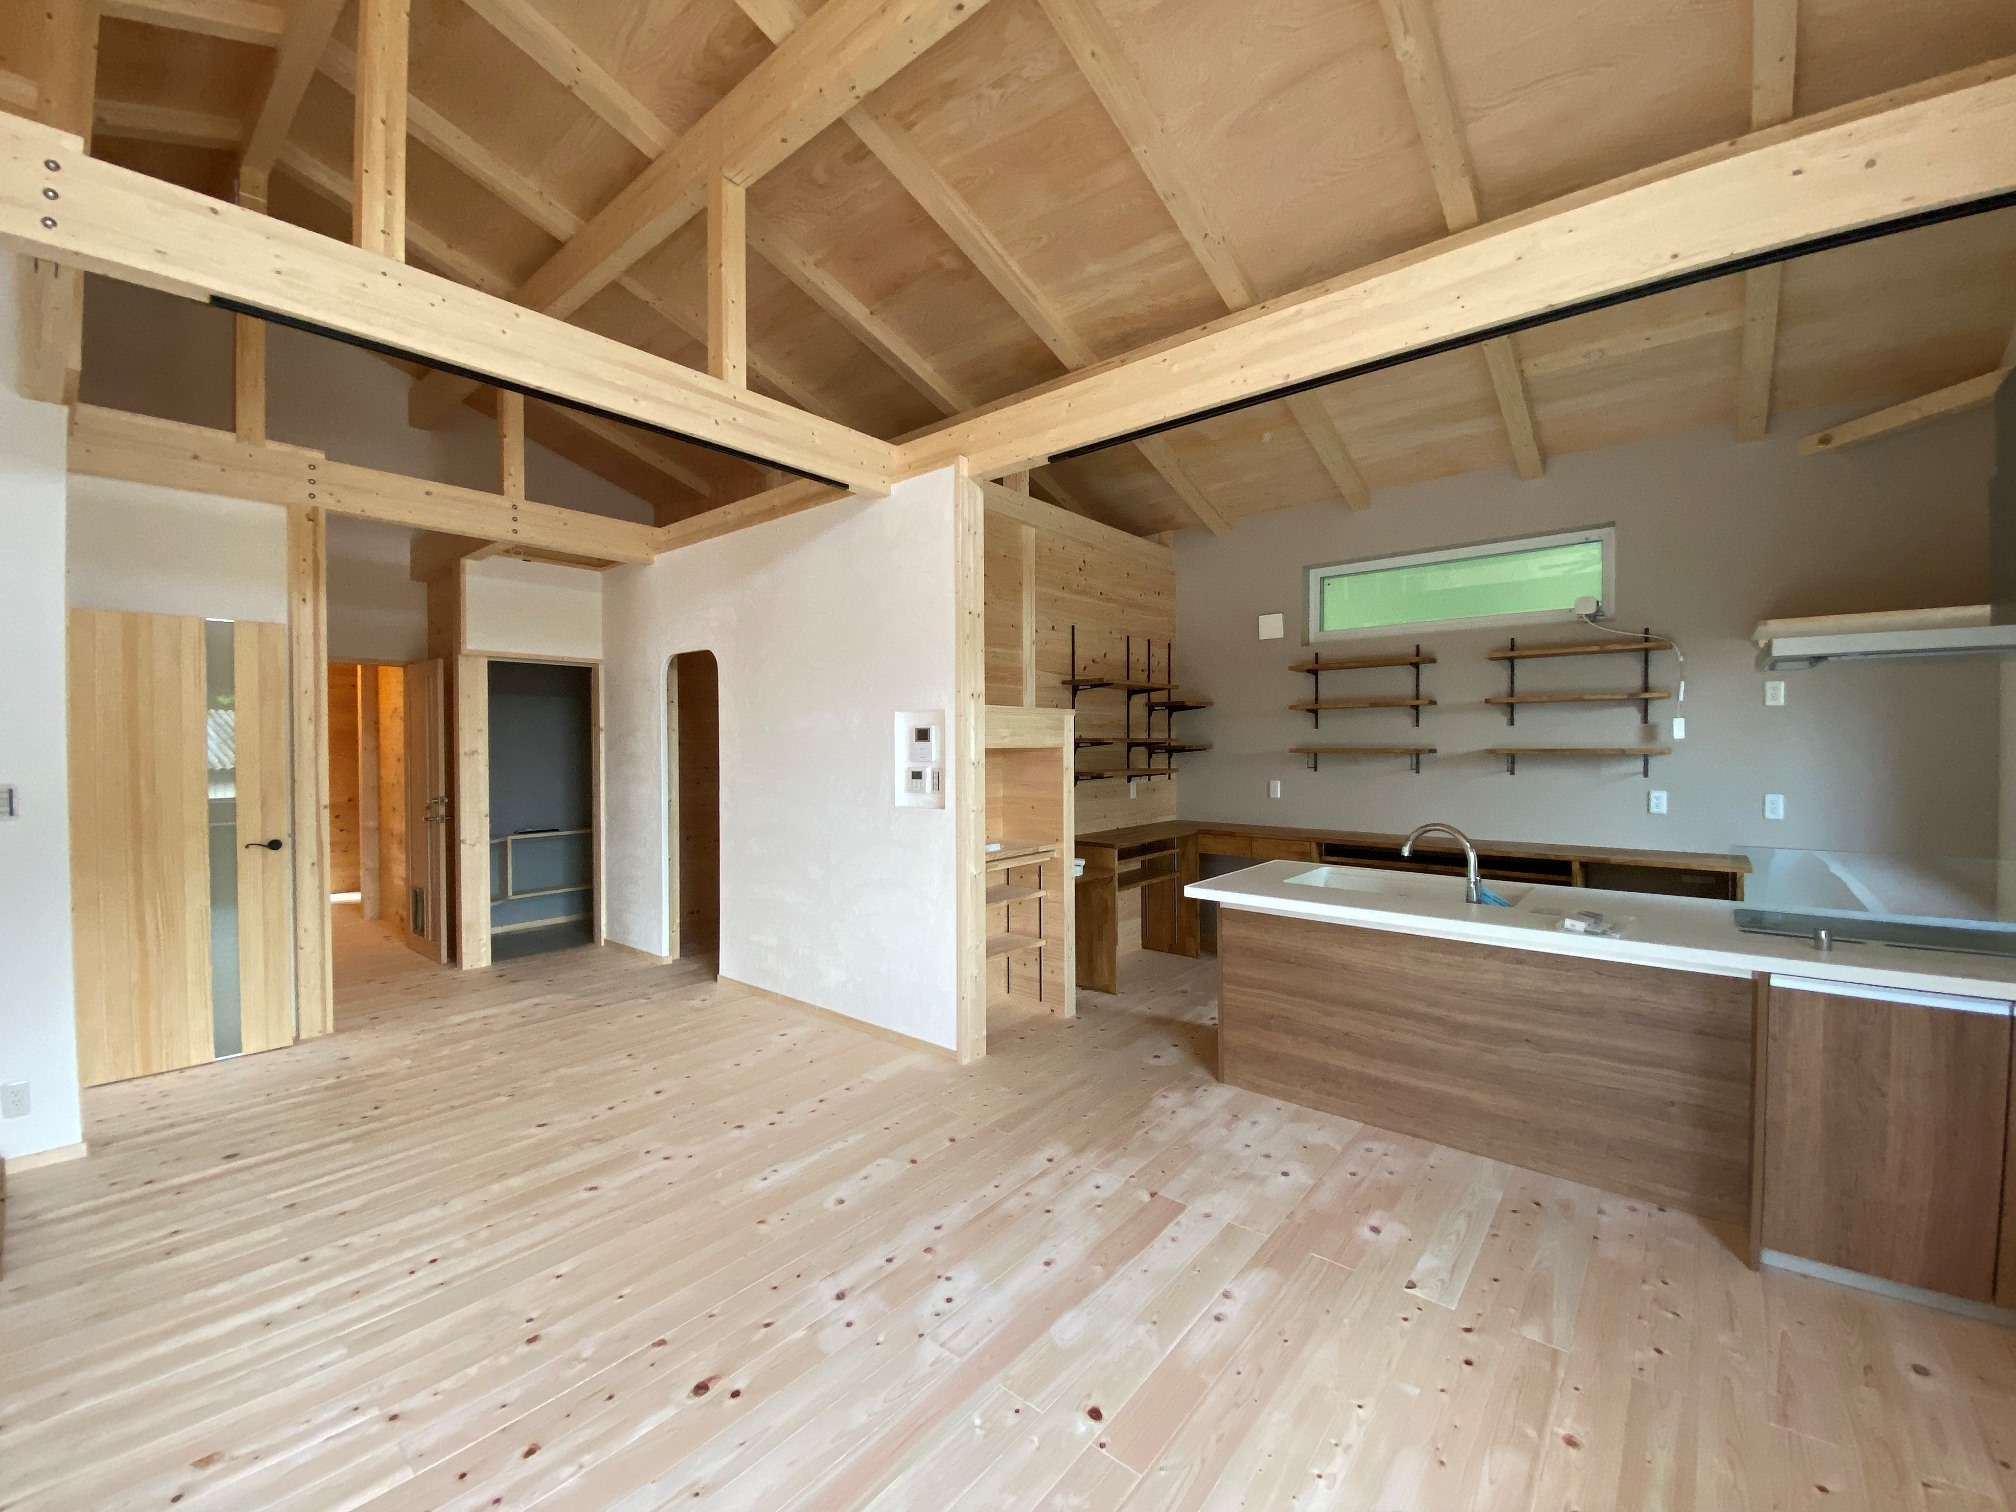 兵庫県加古川市で自然素材の家を考えている方へ、自然素材の家のメリット